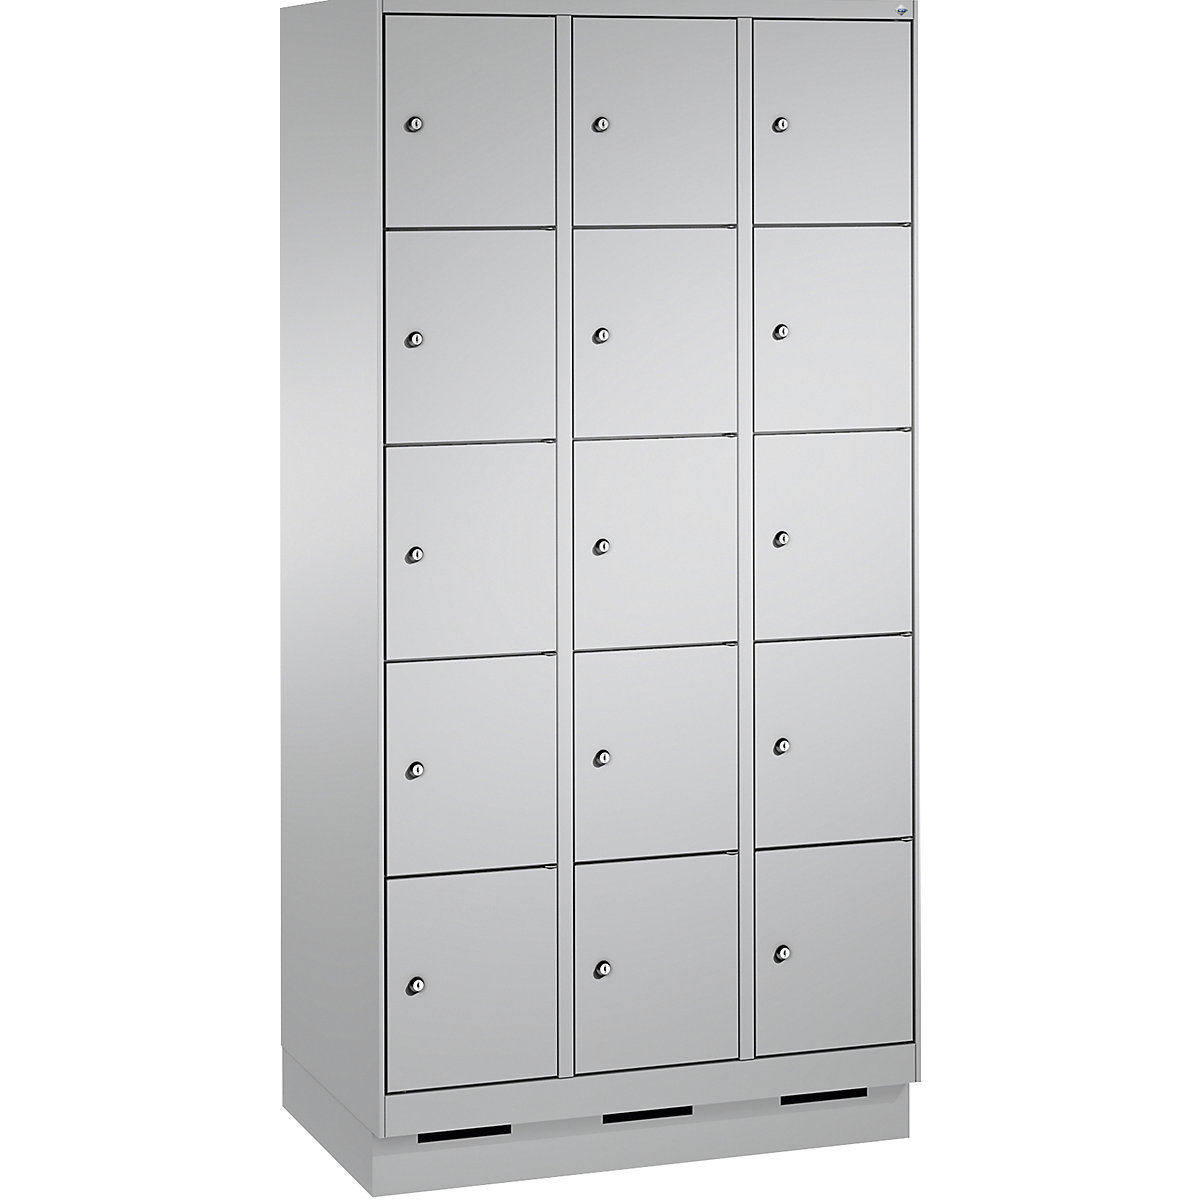 Armoire à casiers sur socle EVOLO – C+P, 3 compartiments, 5 casiers chacun, largeur compartiments 300 mm, aluminium / aluminium-11